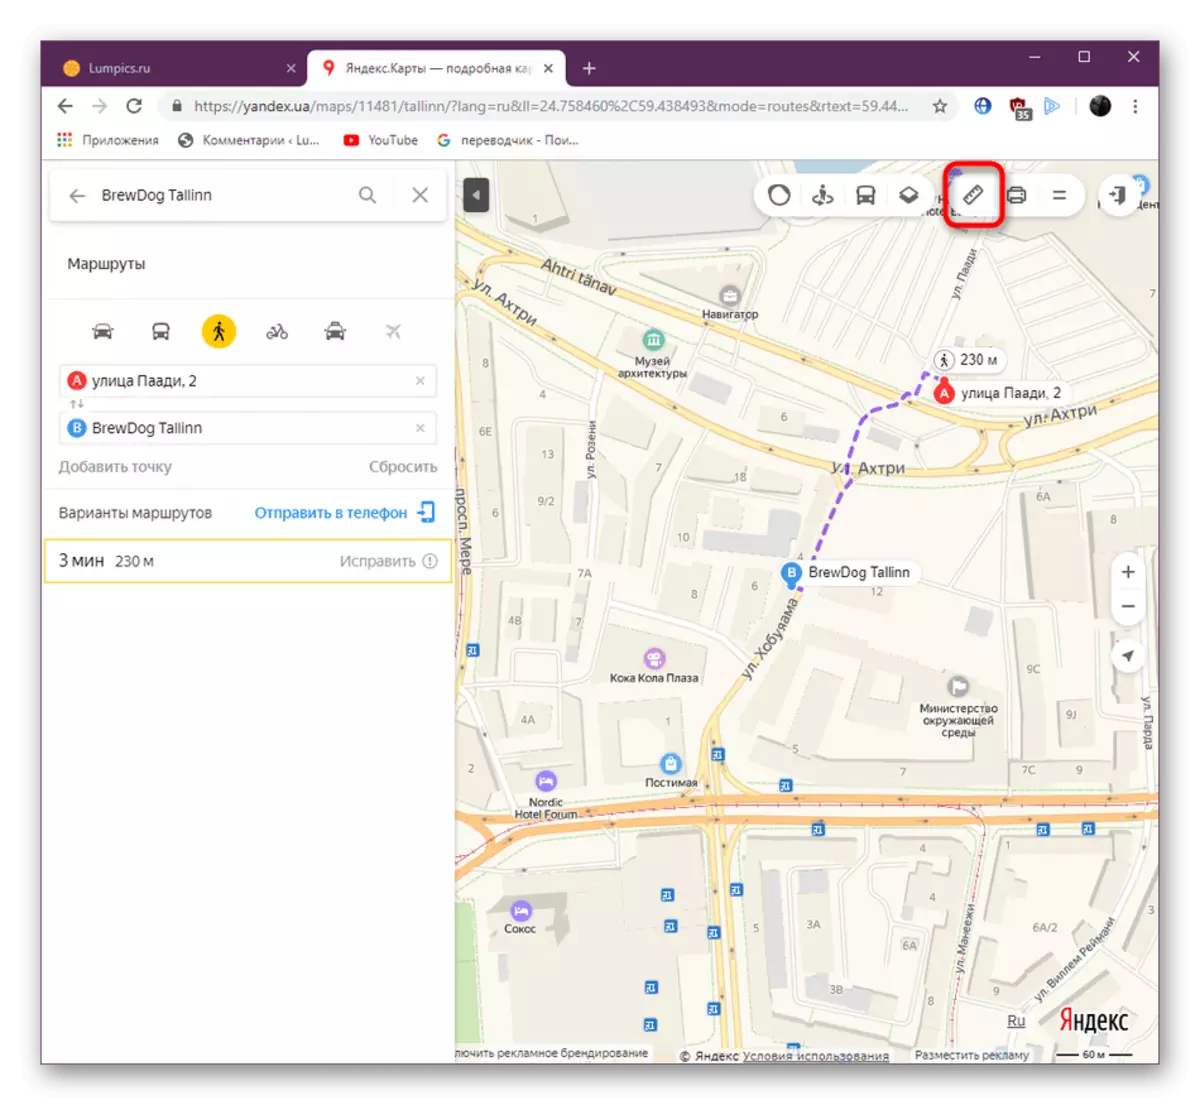 Pag-on ng Ruler ng Tool sa website ng Yandex.Maps.